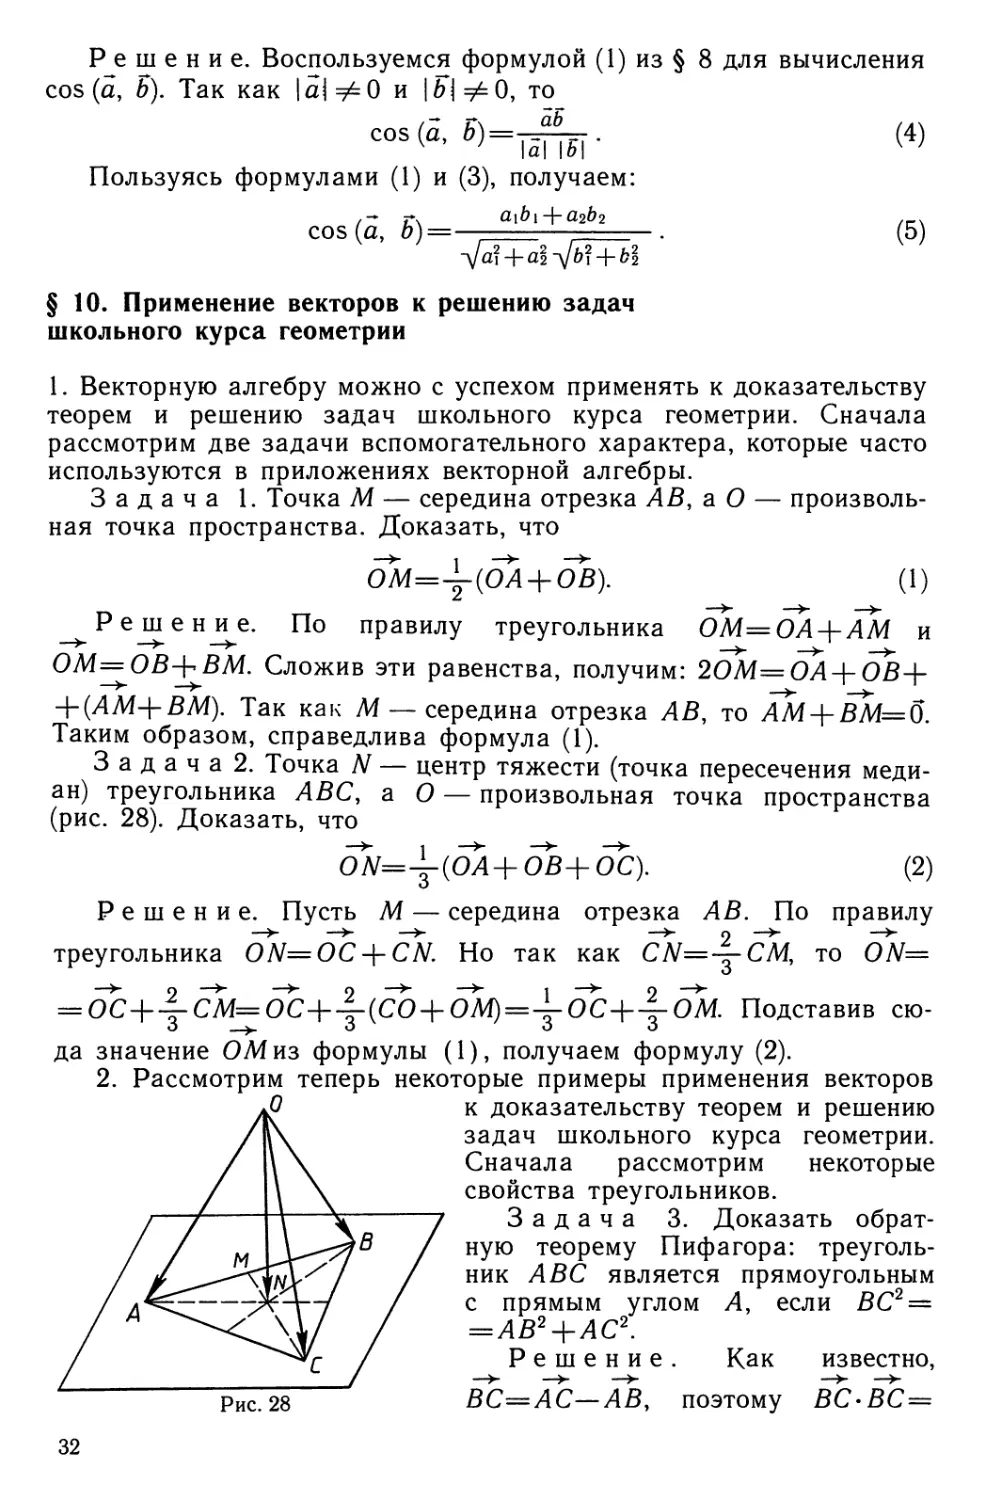 § 10. Применение векторов к решению задач школьного курса геометрии